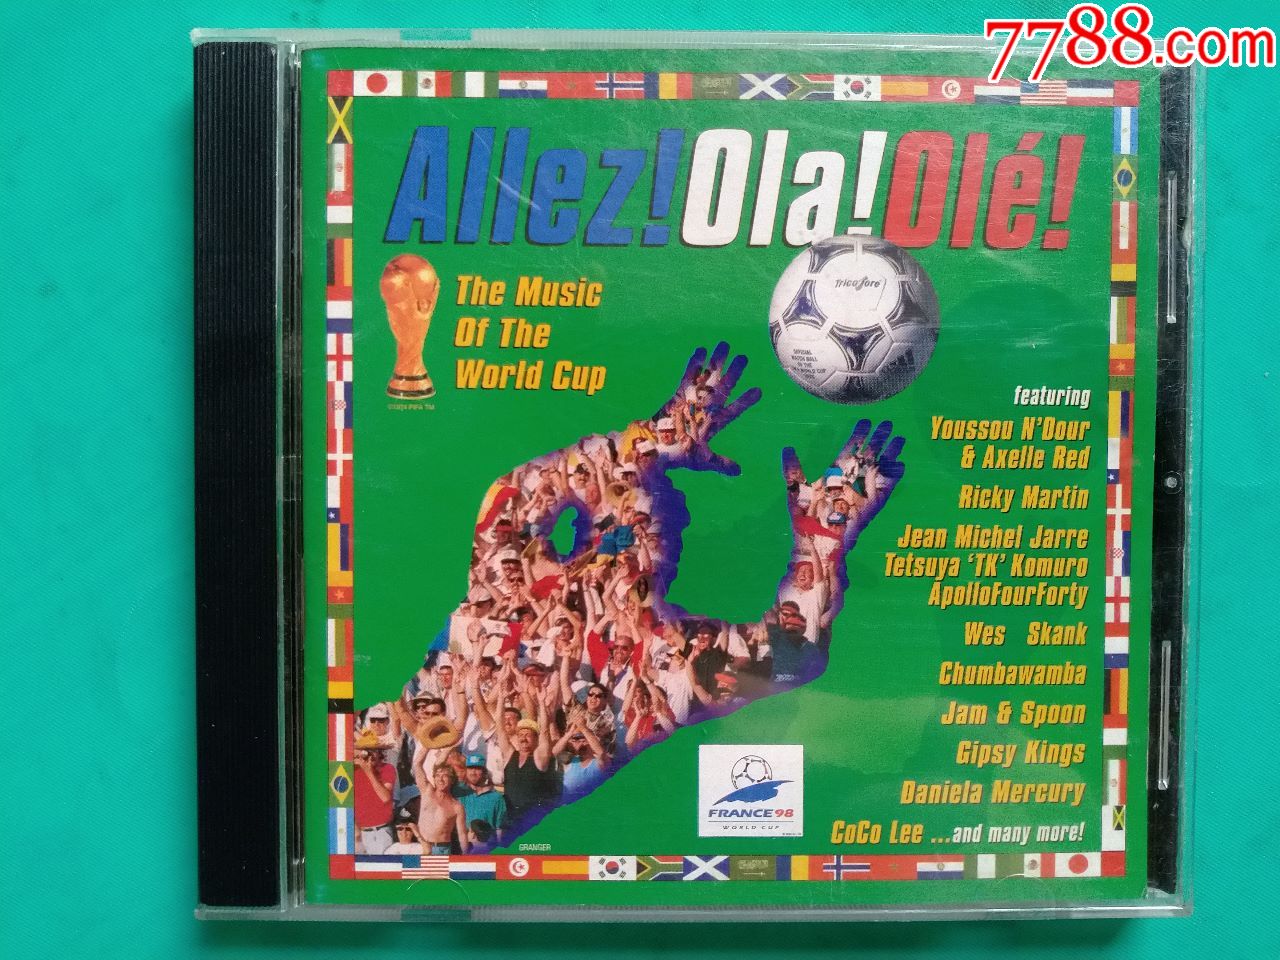 哪一年的世界杯主题曲最好听_凤舞长生曲,鸾歌续命杯。(曲)_deemo2.0哪个曲包好听